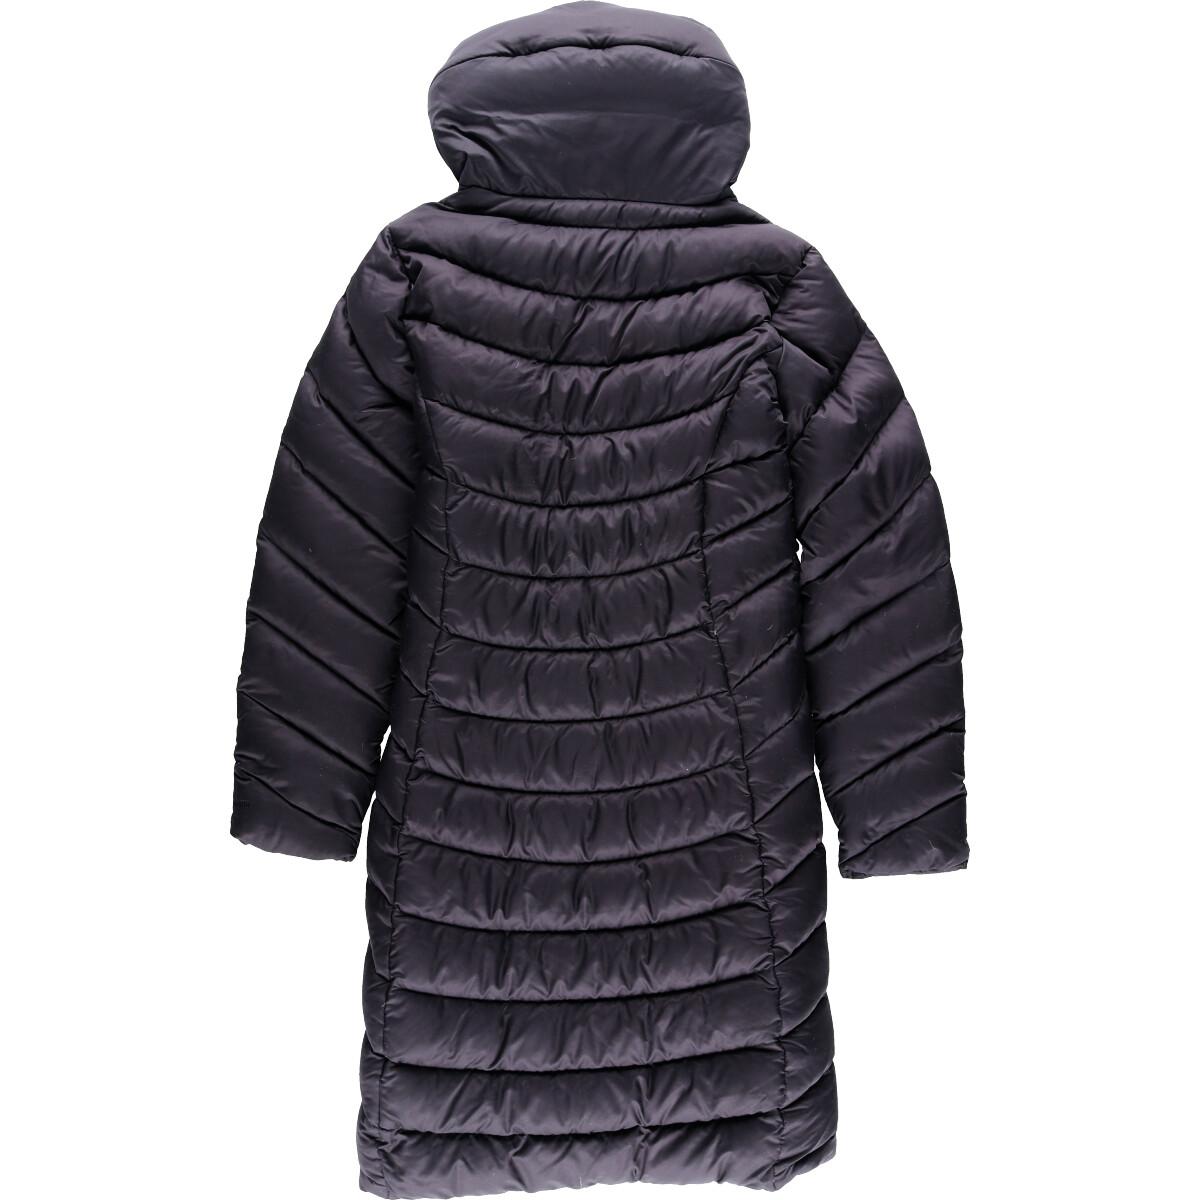 patagonia jacket with fur hood